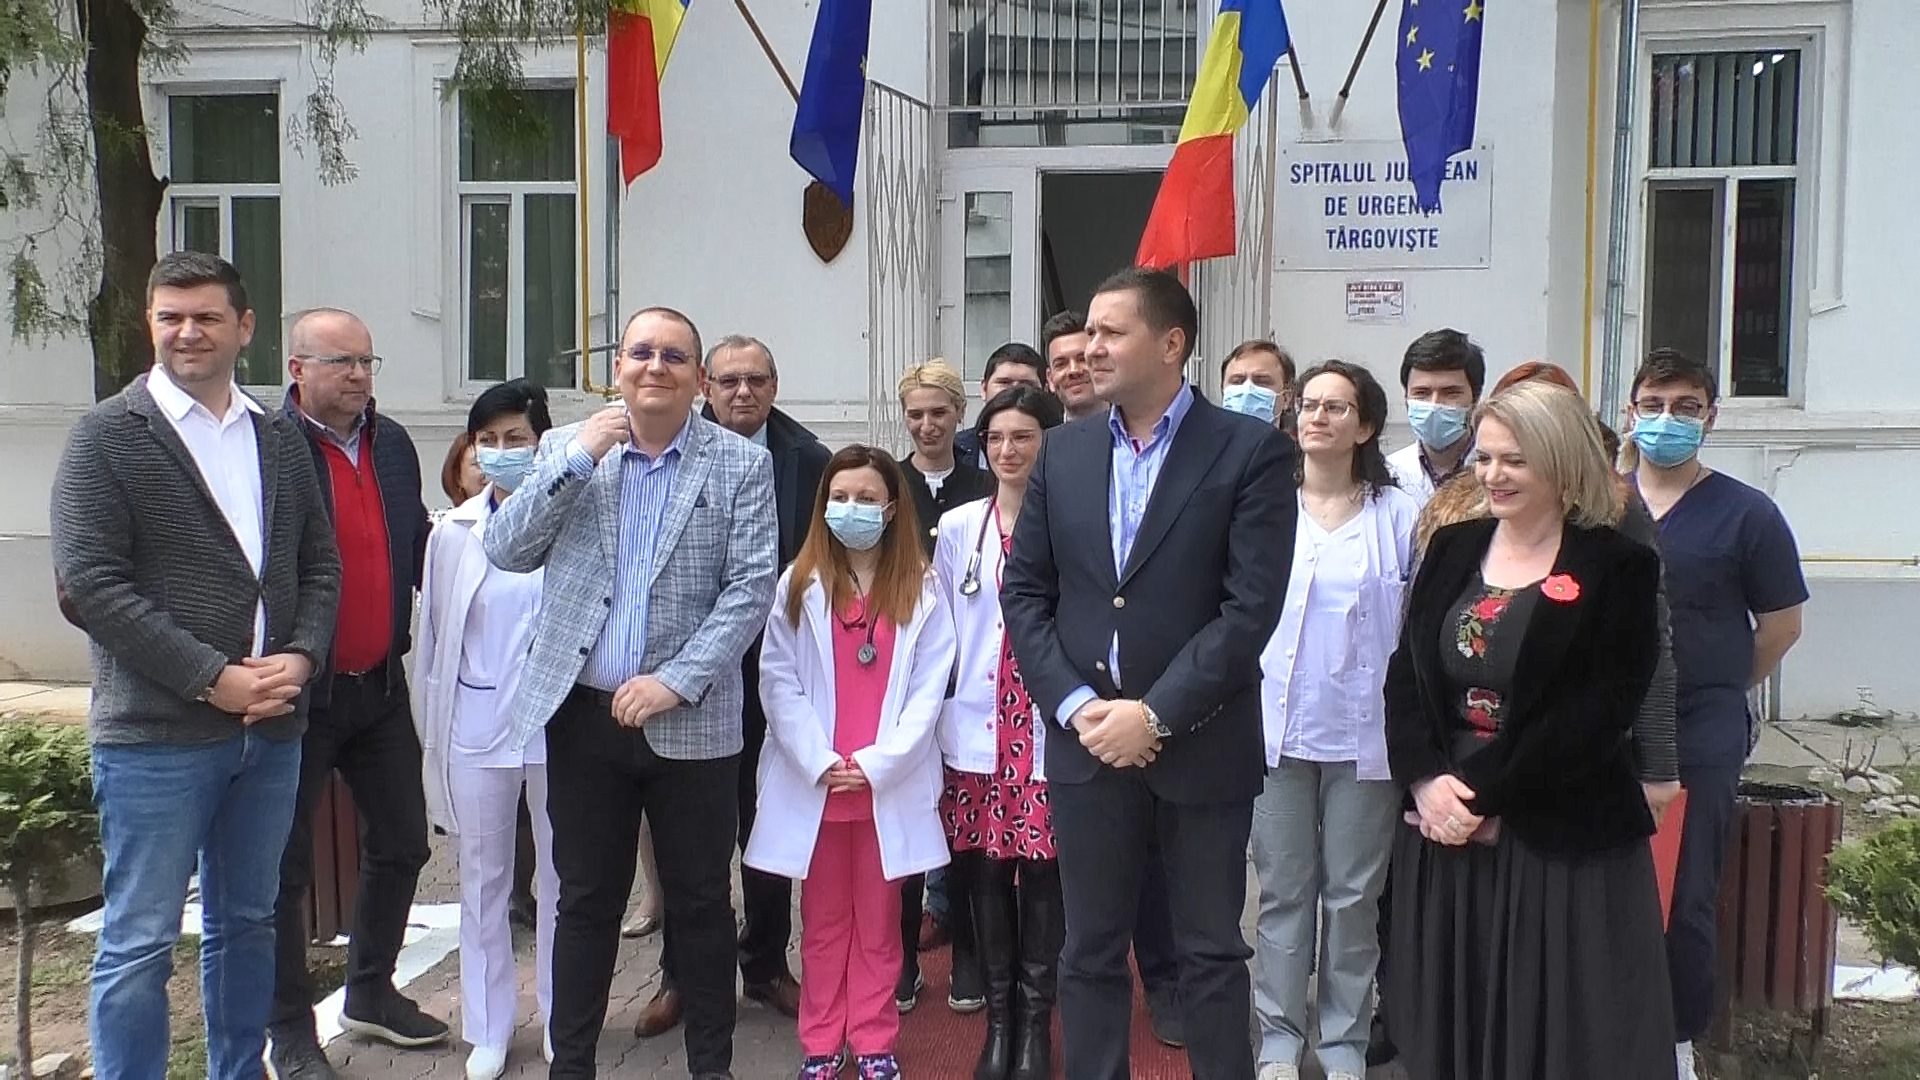 Alți 12 medici tineri, la Spitalul Județean de Urgență Târgoviște, în plin proces de execuție sunt și investiții majore